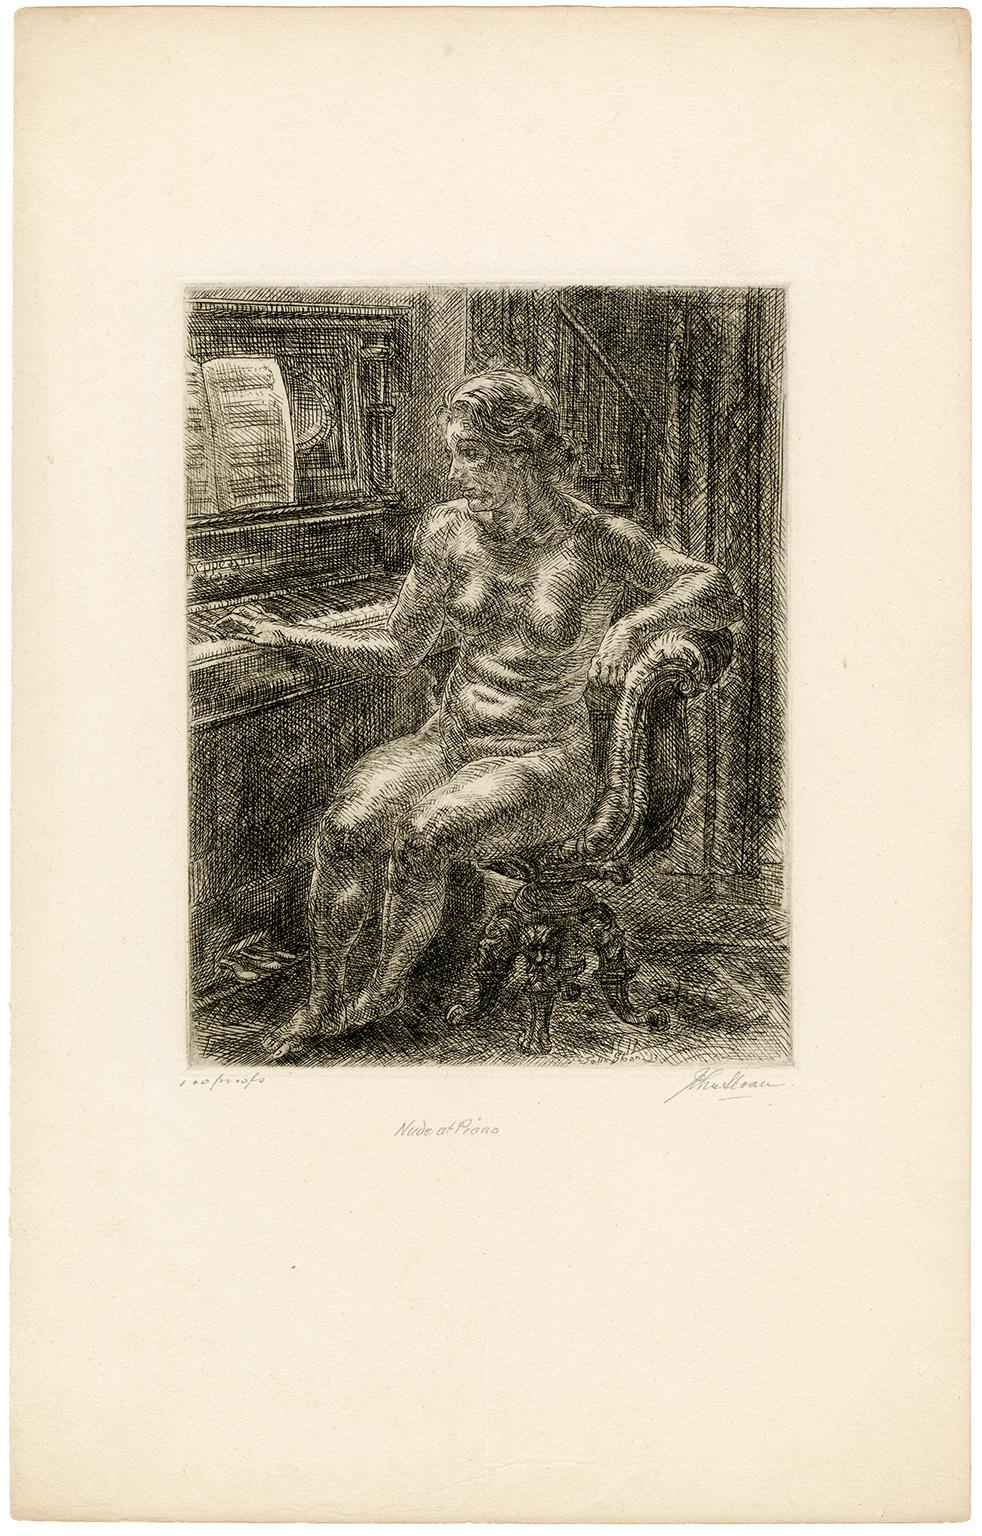 Nude at Piano - Print by John Sloan